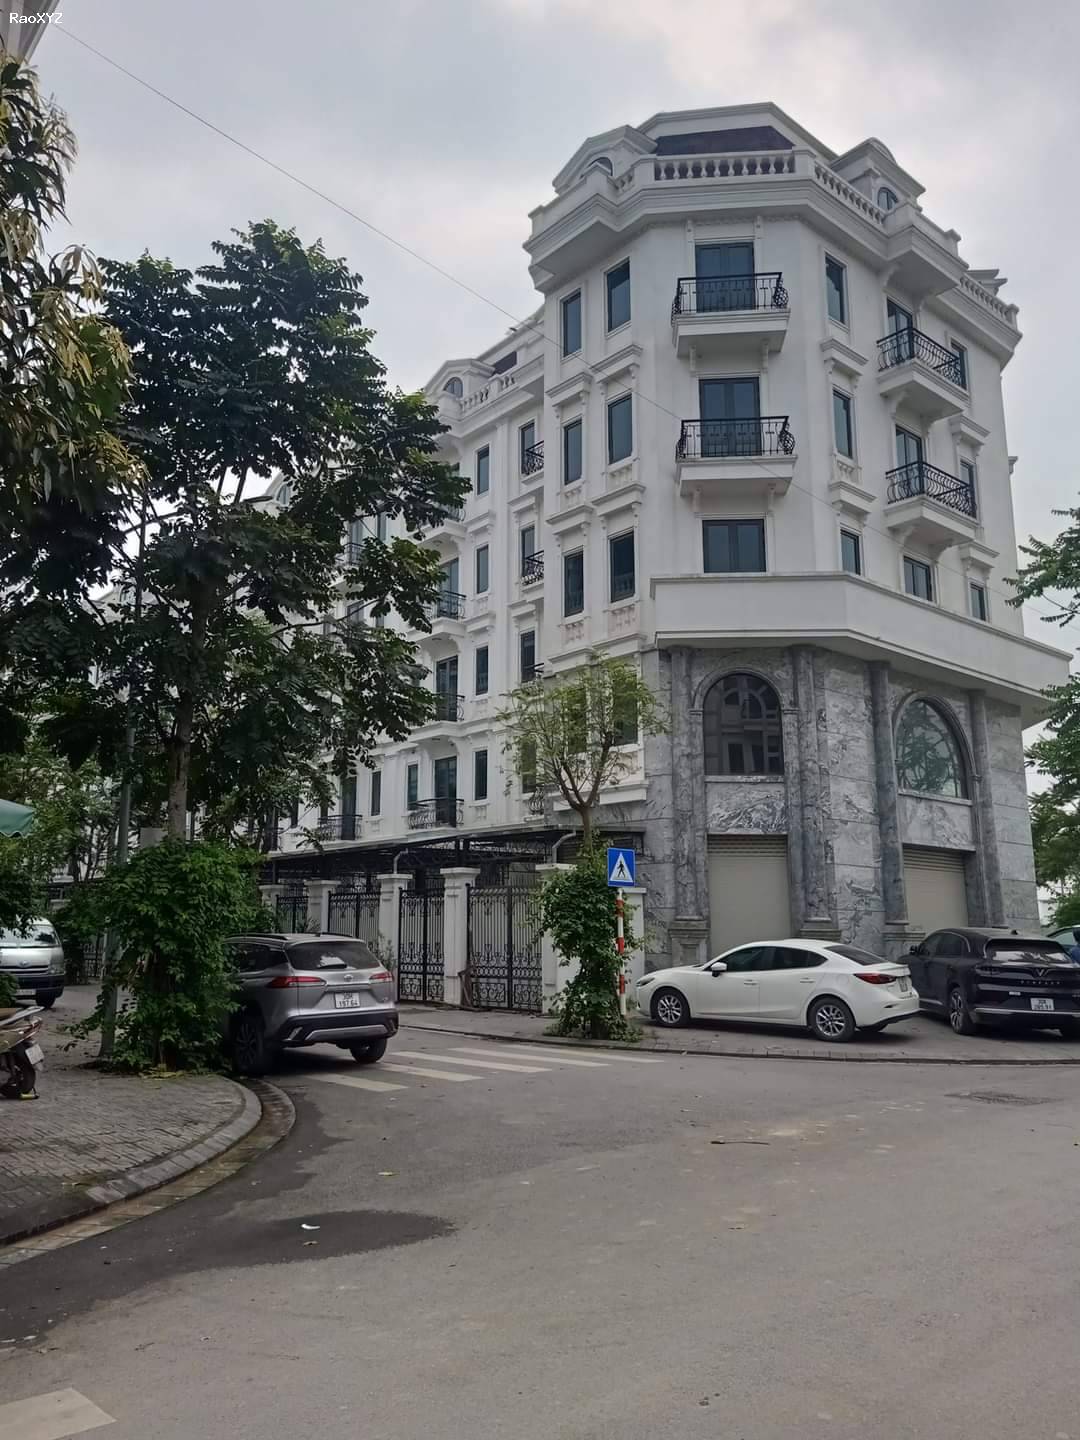 Lô shophouse Văn Khê, Khu Đô thị Văn Phú 126 m  7 tầng nổi 1 hầm mt 7.0 m  giá hơn 30 tỷ